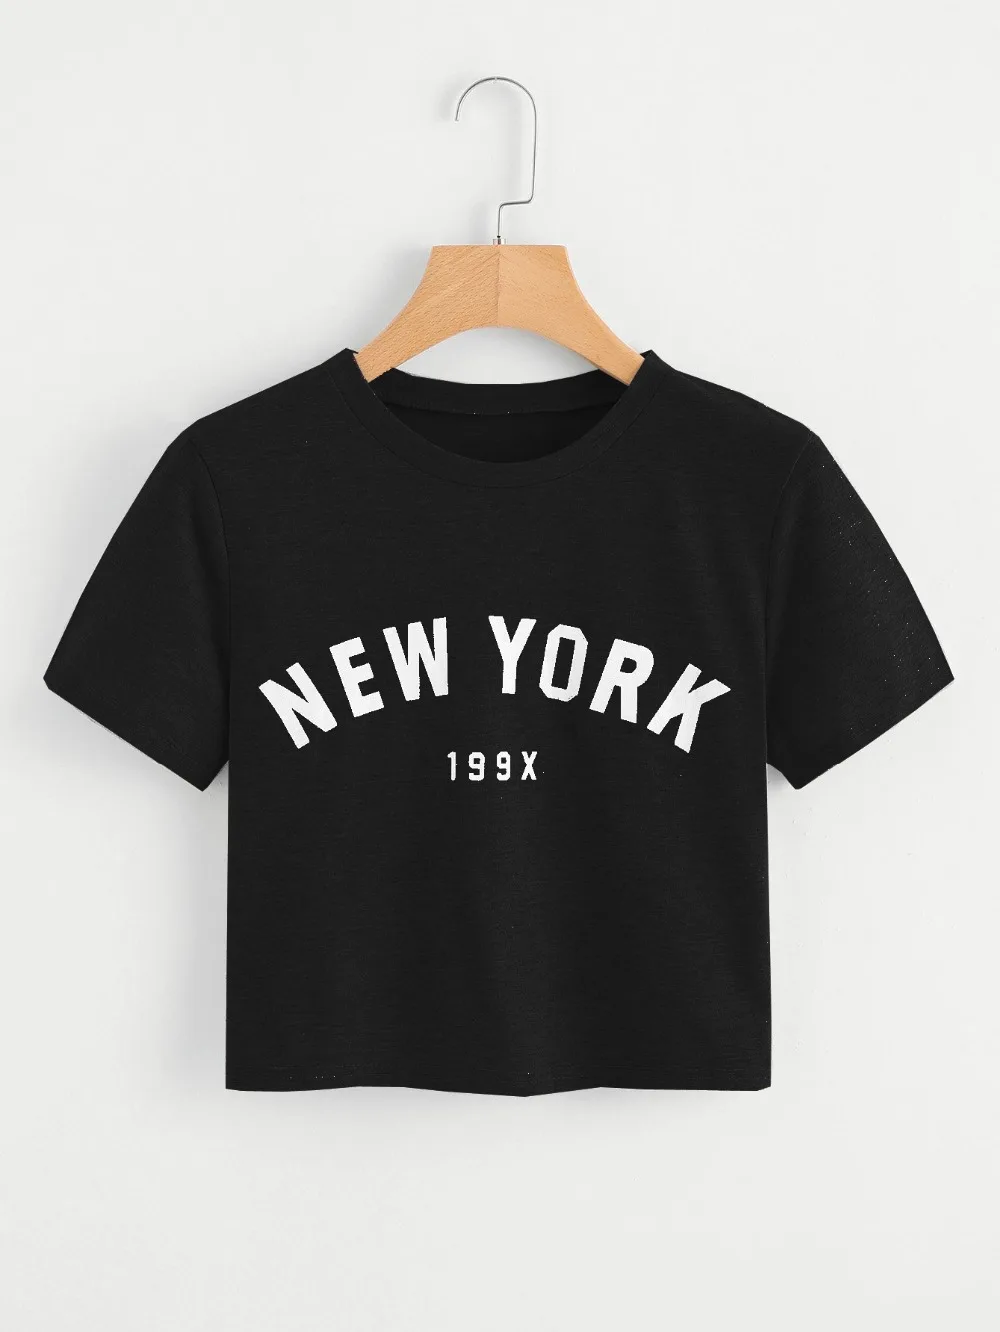 De las nuevas mujeres de la moda de NUEVA YORK 199X camiseta crop tops chica sexo tees grunge goth 'crop tops' harajuku estética tumblr chica casual top 3